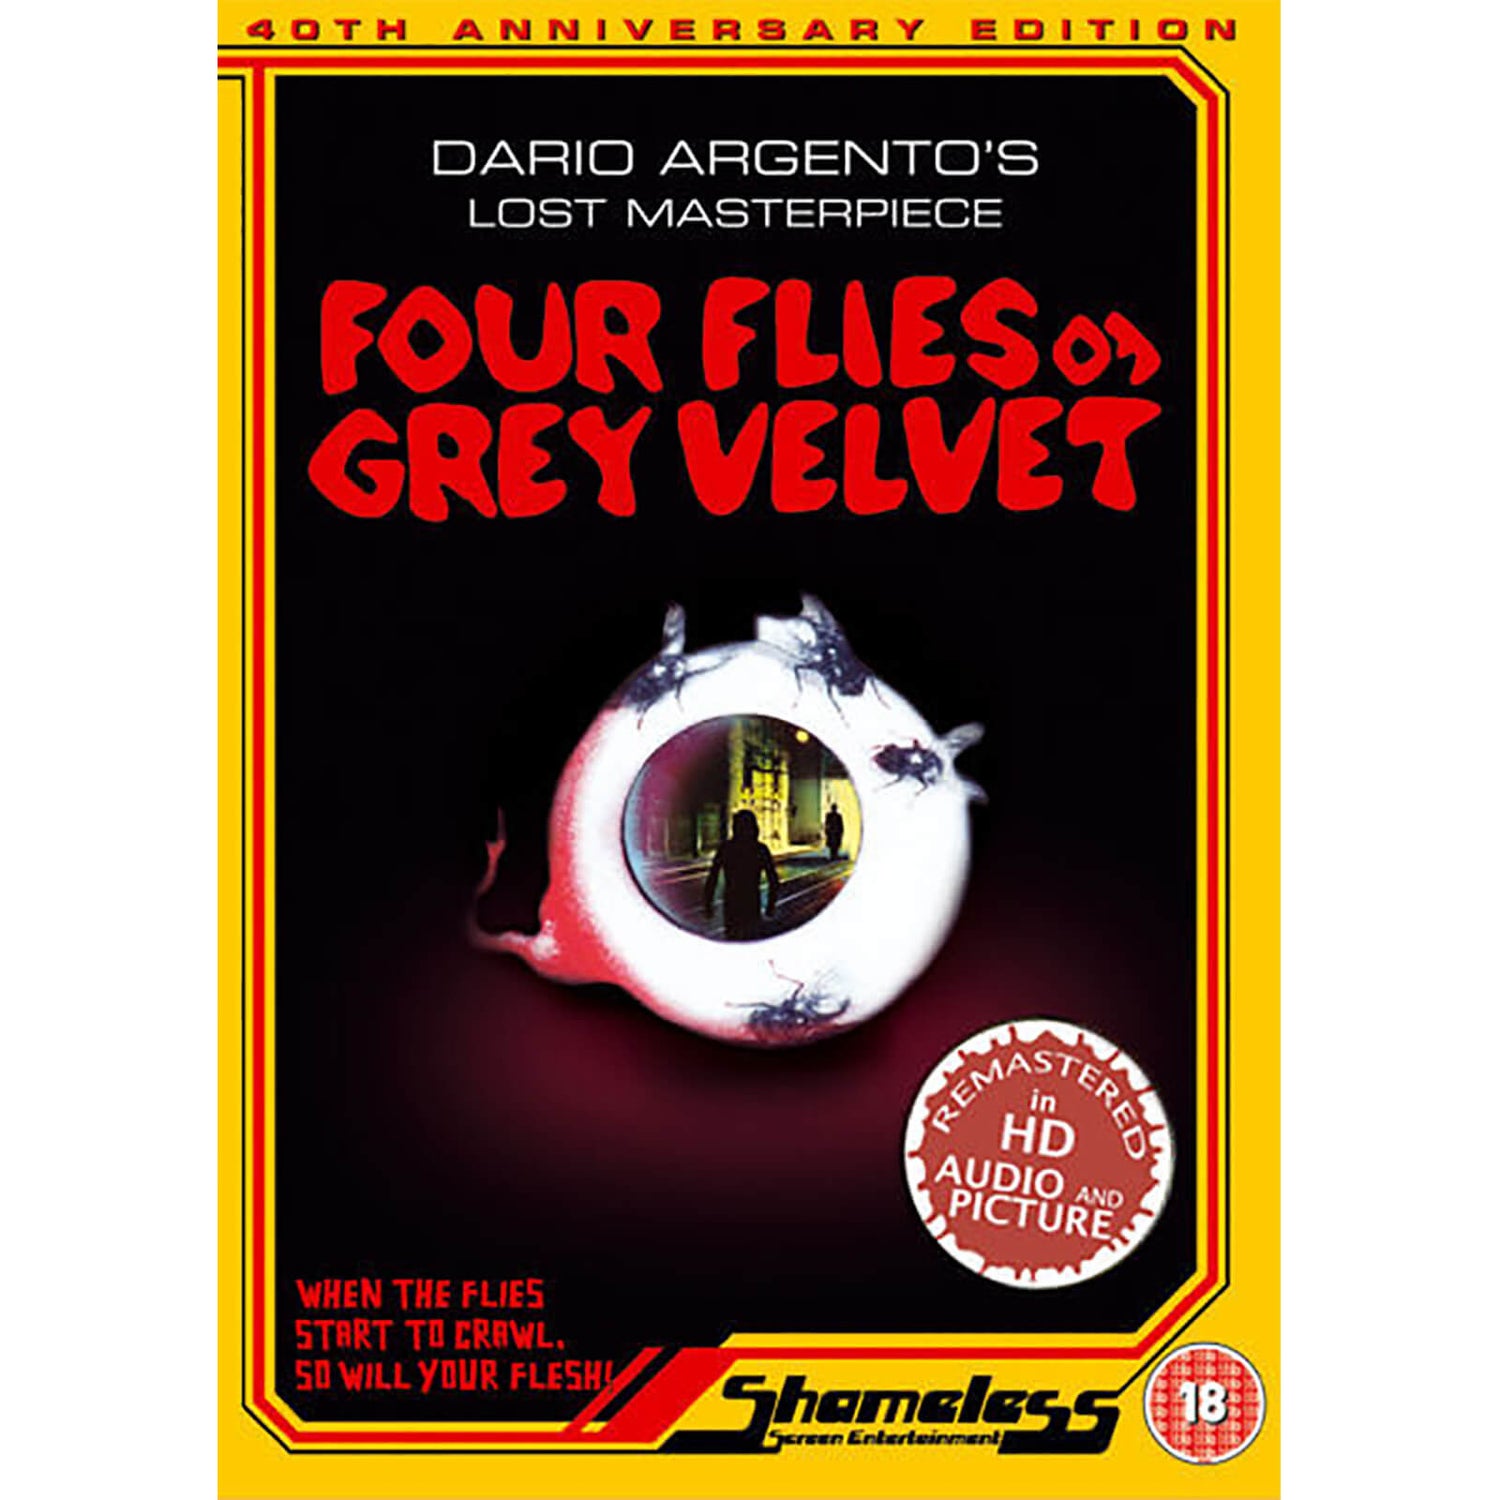 Four Flies on Grey Velvet